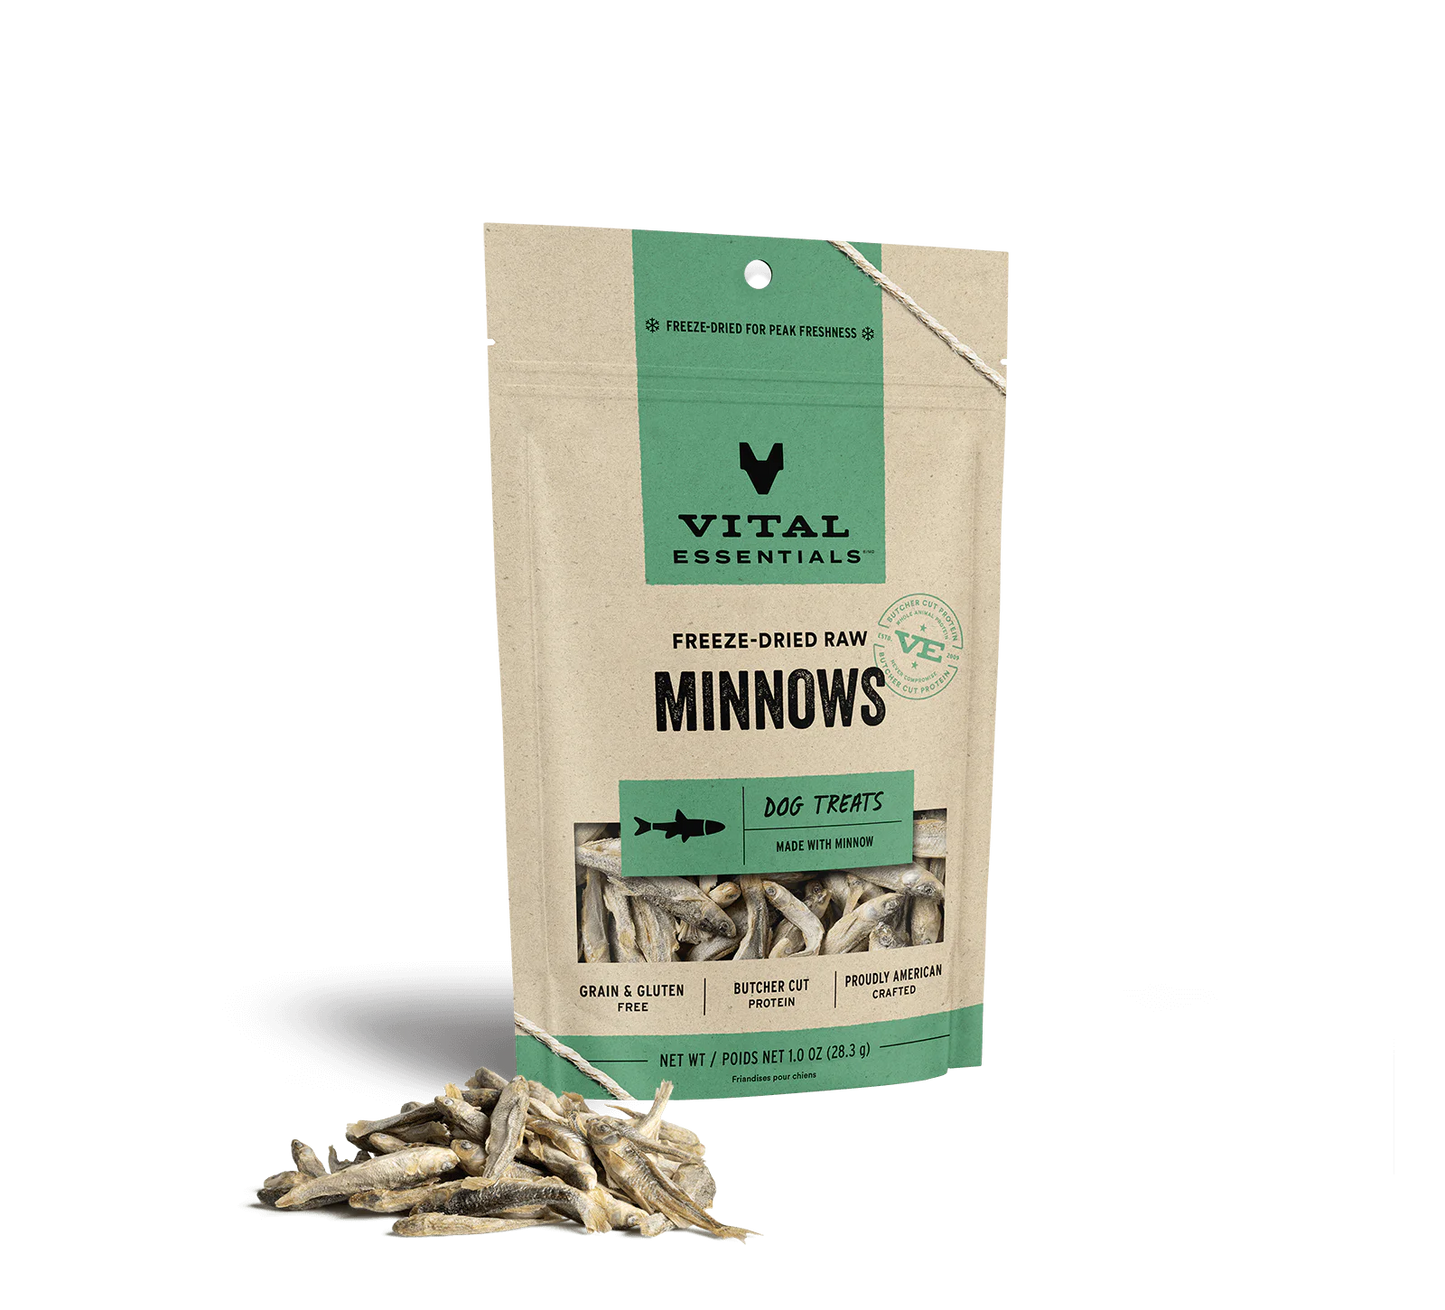 Vital Essentials Freeze-Dried Minnows, Dog Treats